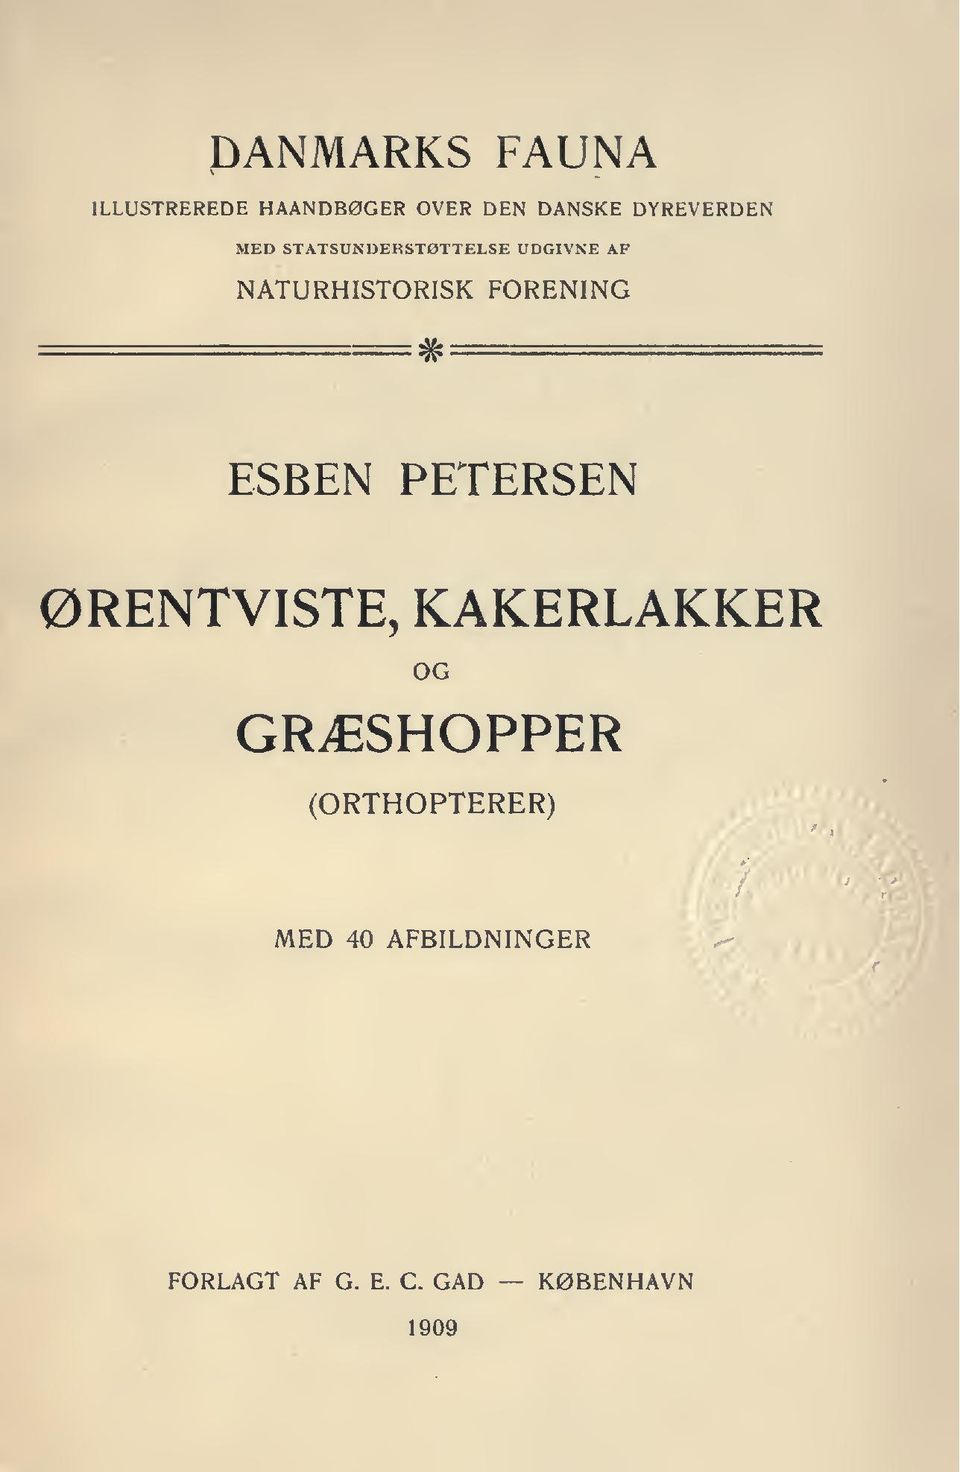 FORENING # ESBEN PETERSEN ØRENTVISTE, KAKERLAKKER OG